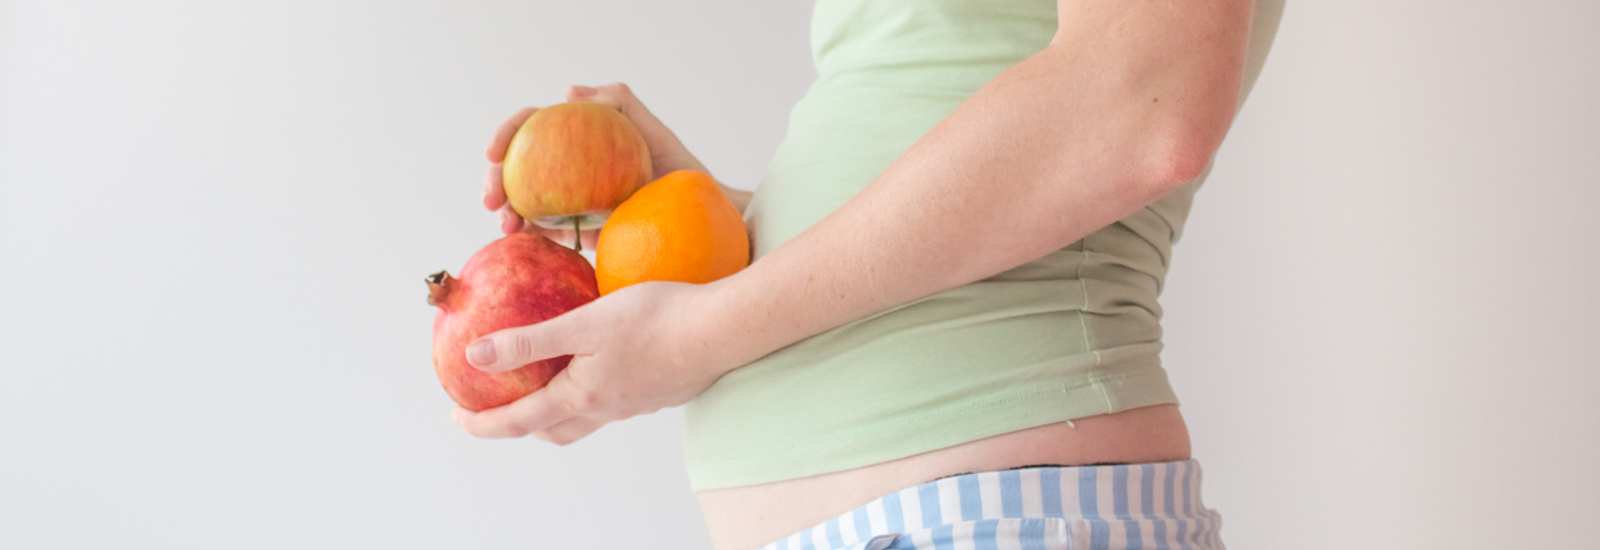 zwangere vrouw dat verschillende vruchten vasthoudt